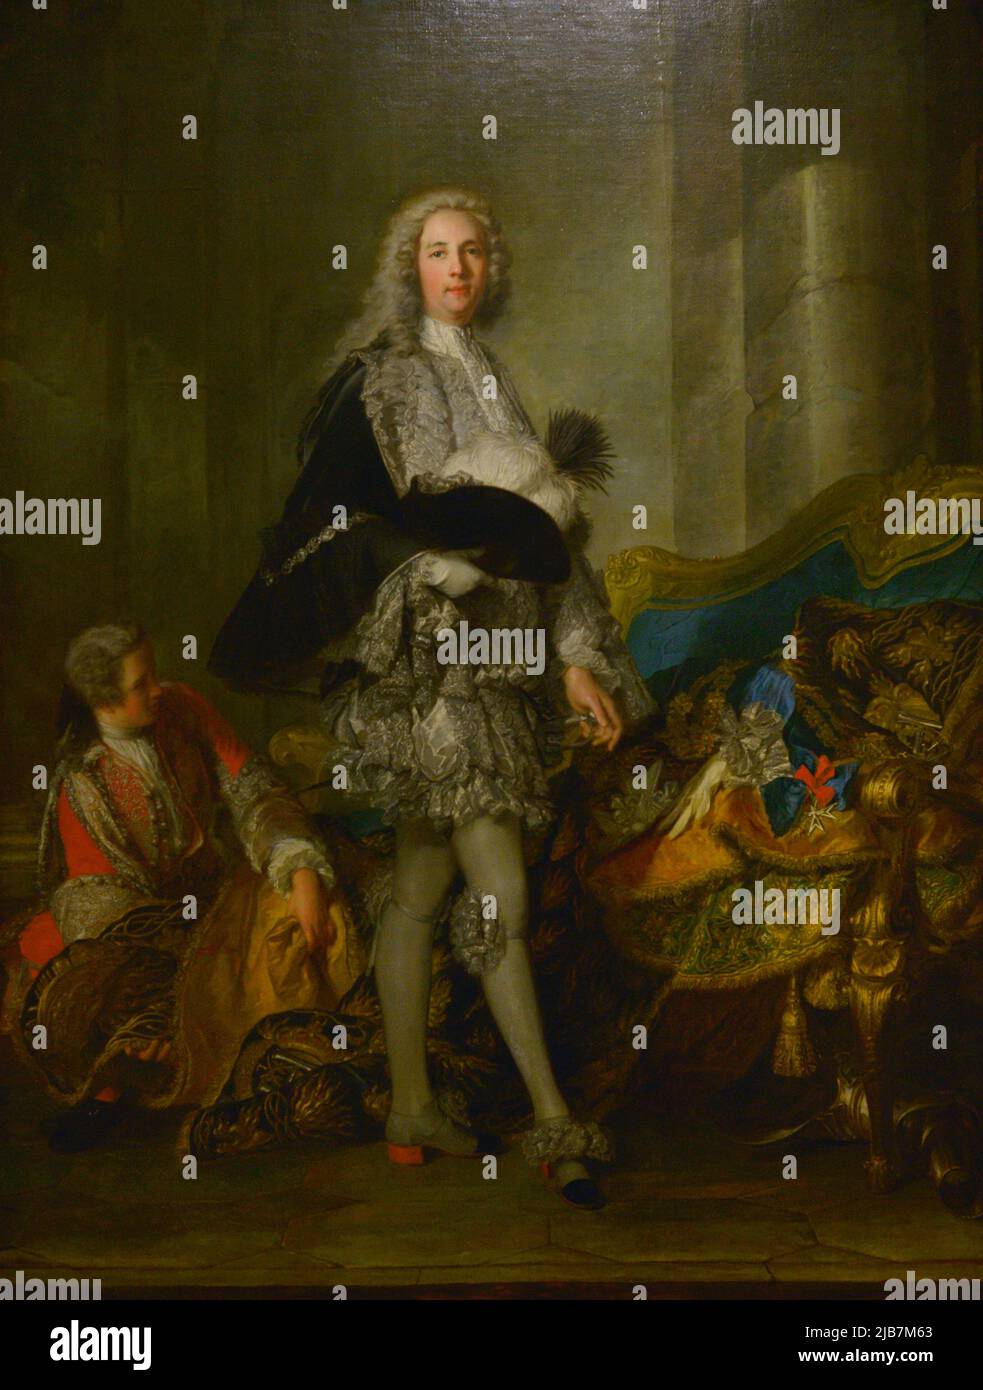 Louis François Armand de Vignerot du Plessis, Marschall Herzog von Richelieu (1696-1788). Französischer Soldat und Politiker. Porträt von Jean Marc Nattier (1685-1766), 1732. Öl auf Leinwand. Calouste Gulbenkian Museum. Lissabon, Portugal. Stockfoto